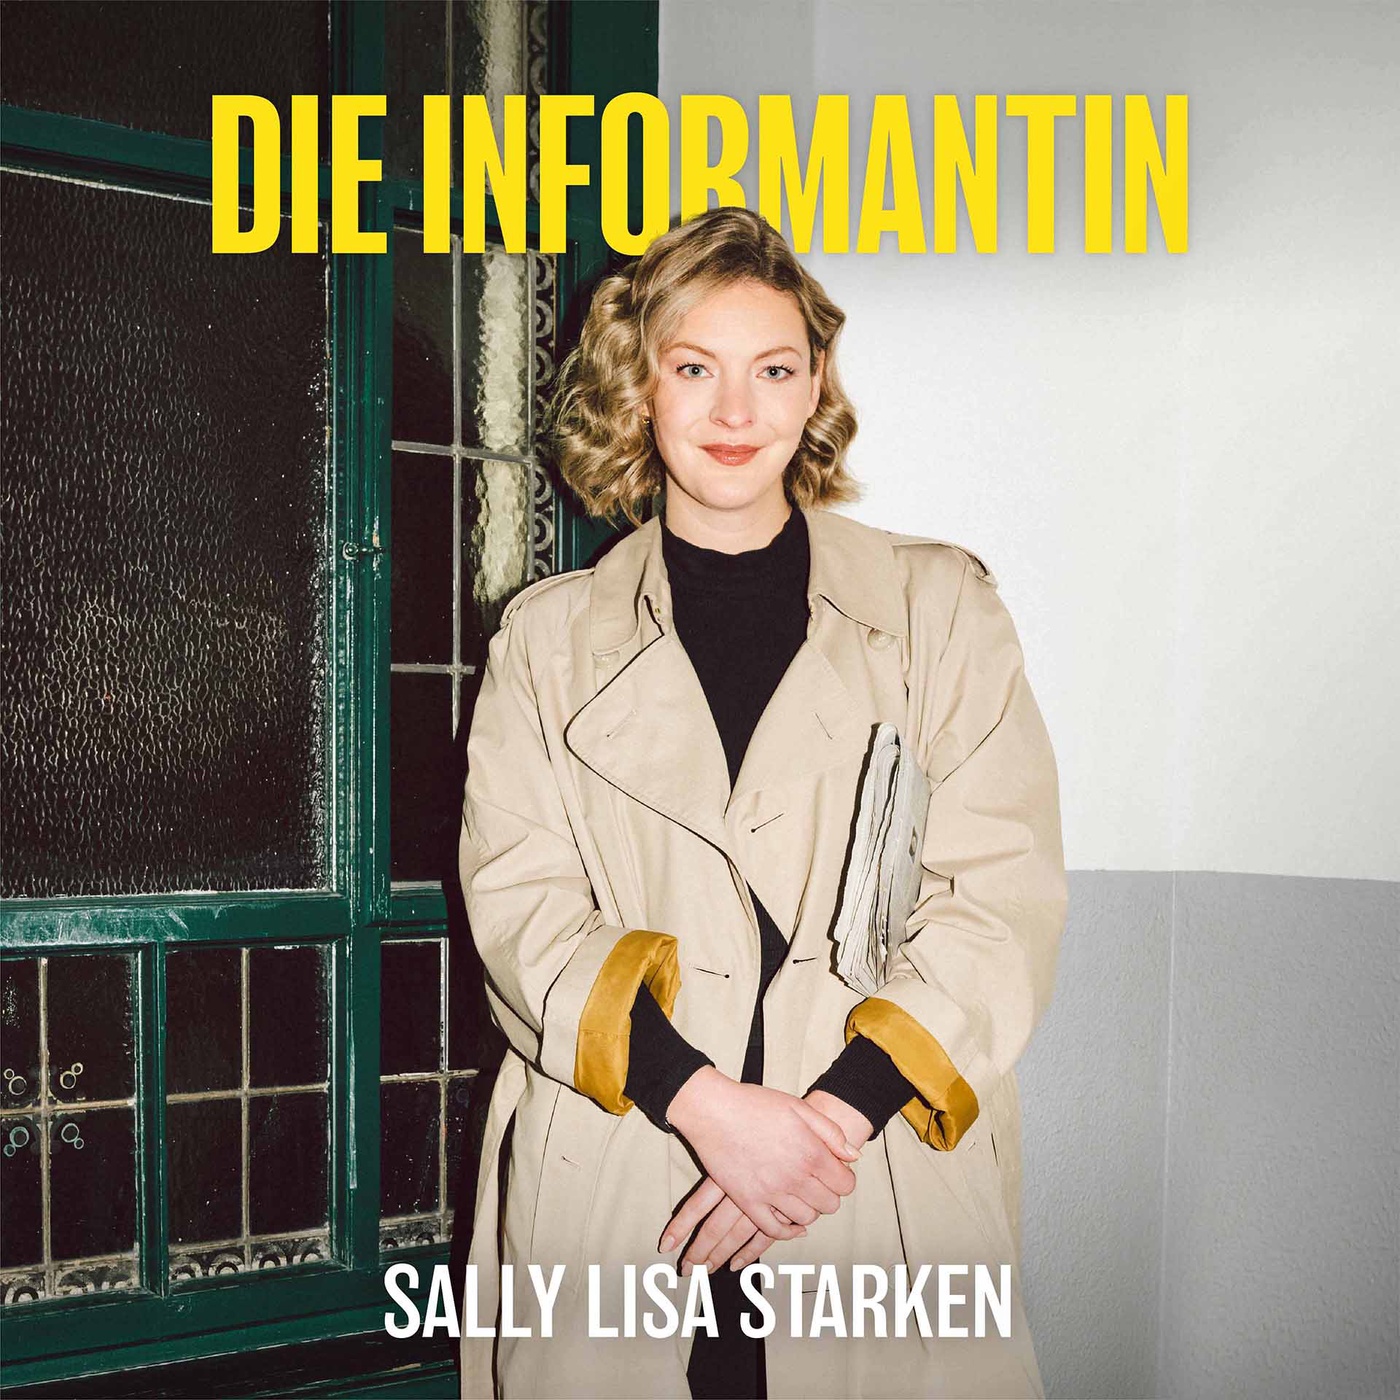 Die Informantin - News erklärt von Sally Lisa Starken